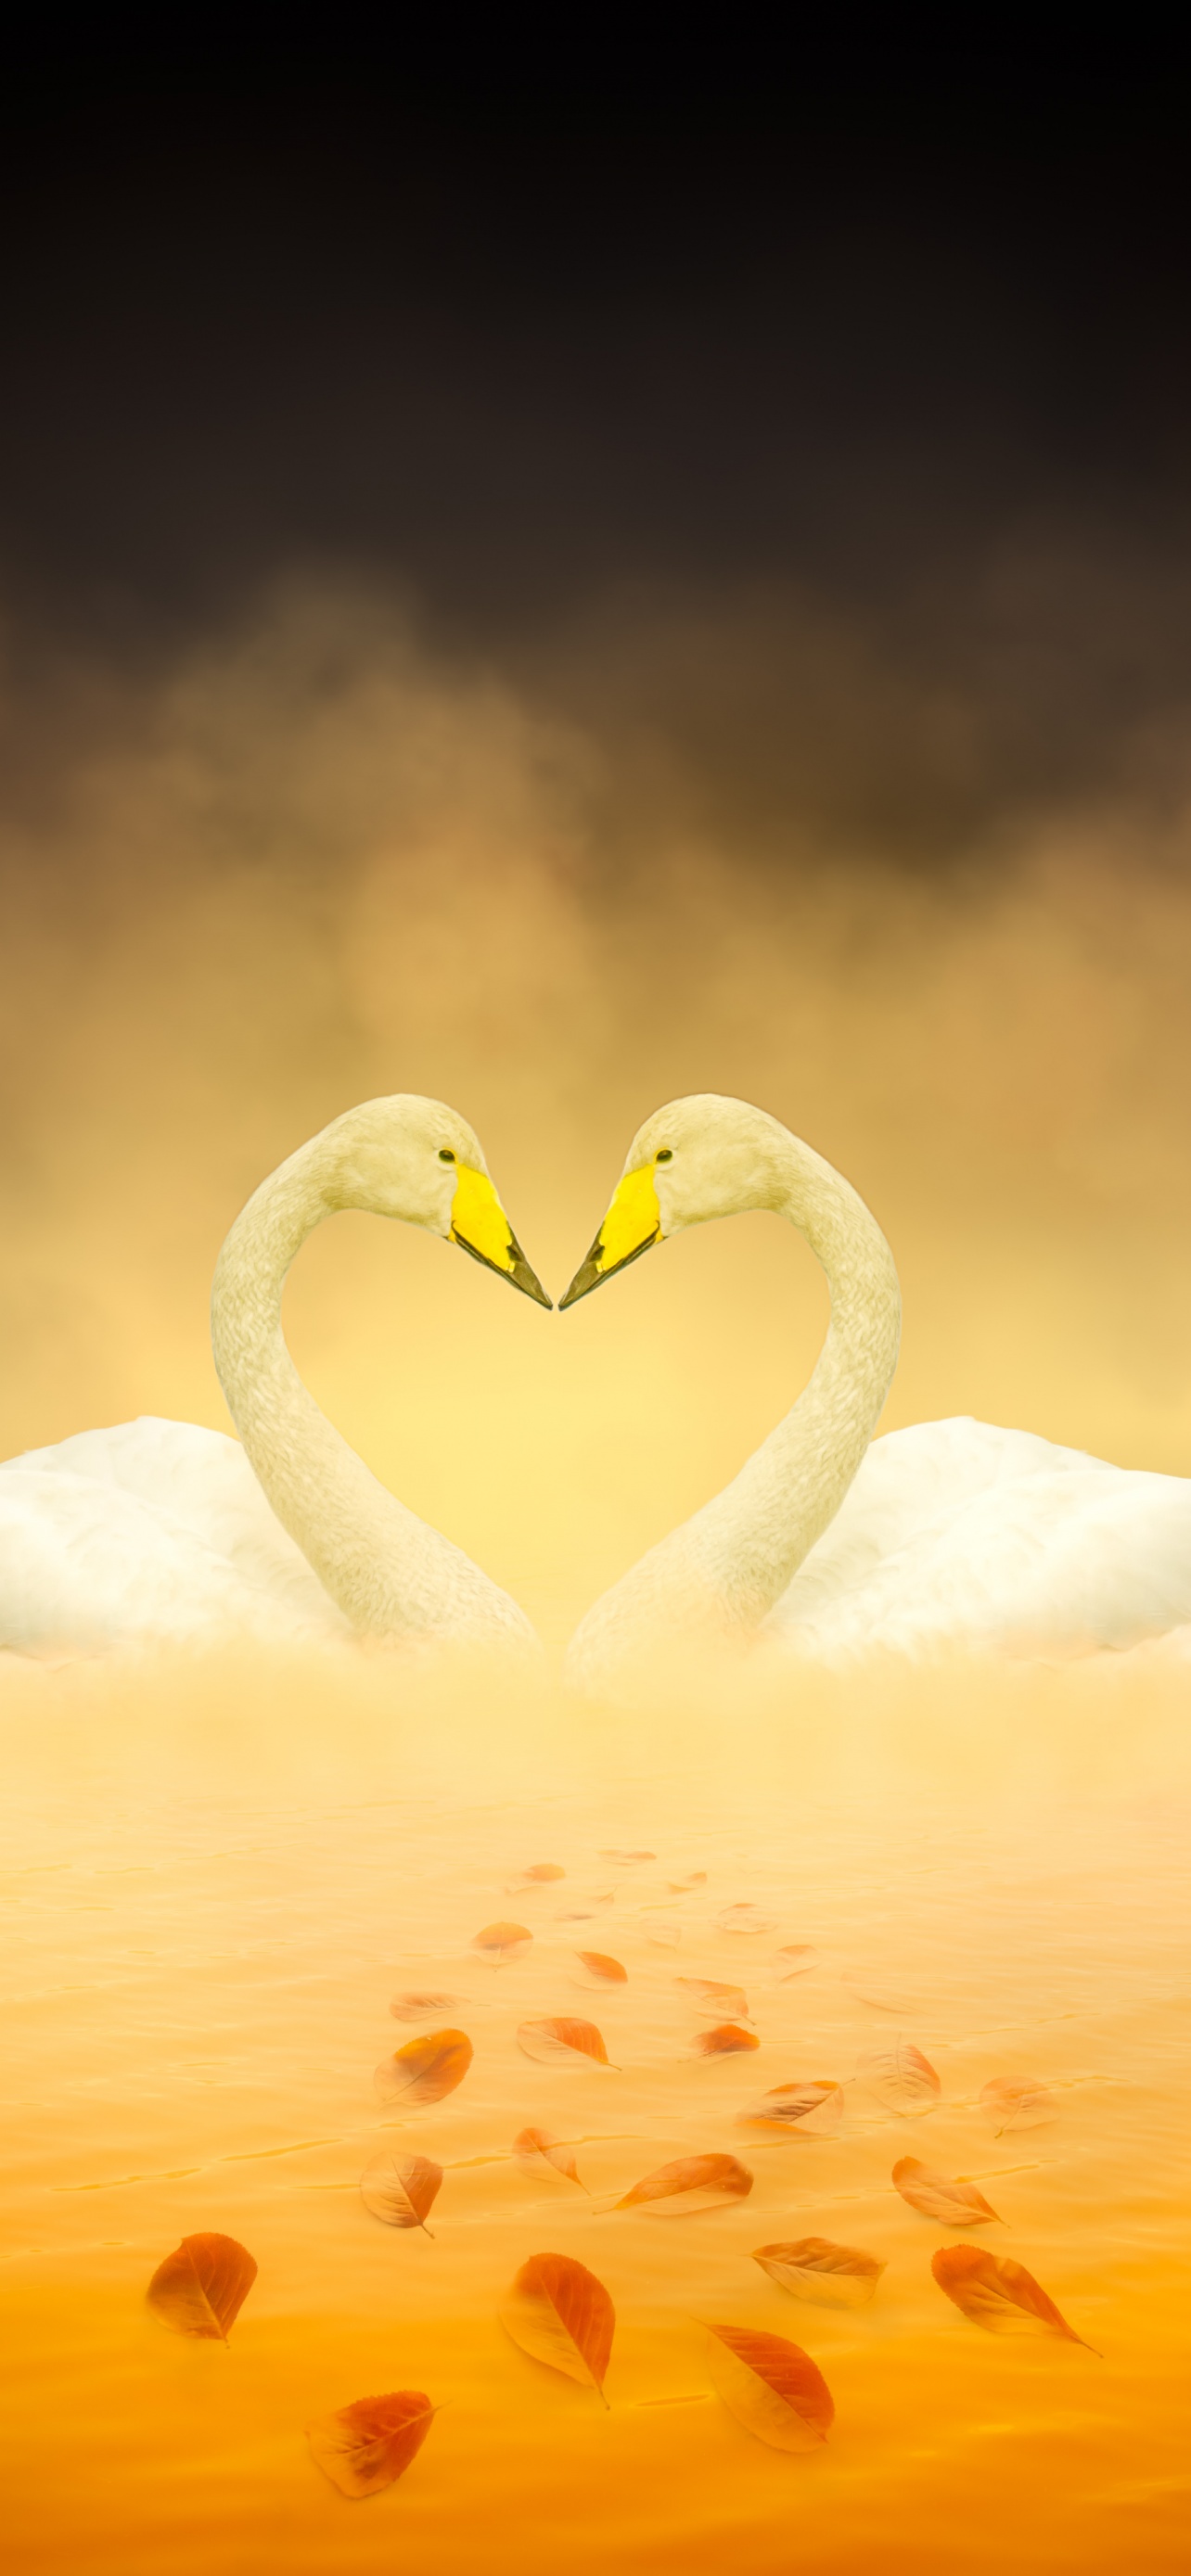 White Swan Wallpaper 4K, Love Birds, Heart shape, Autumn leaves, Yellow